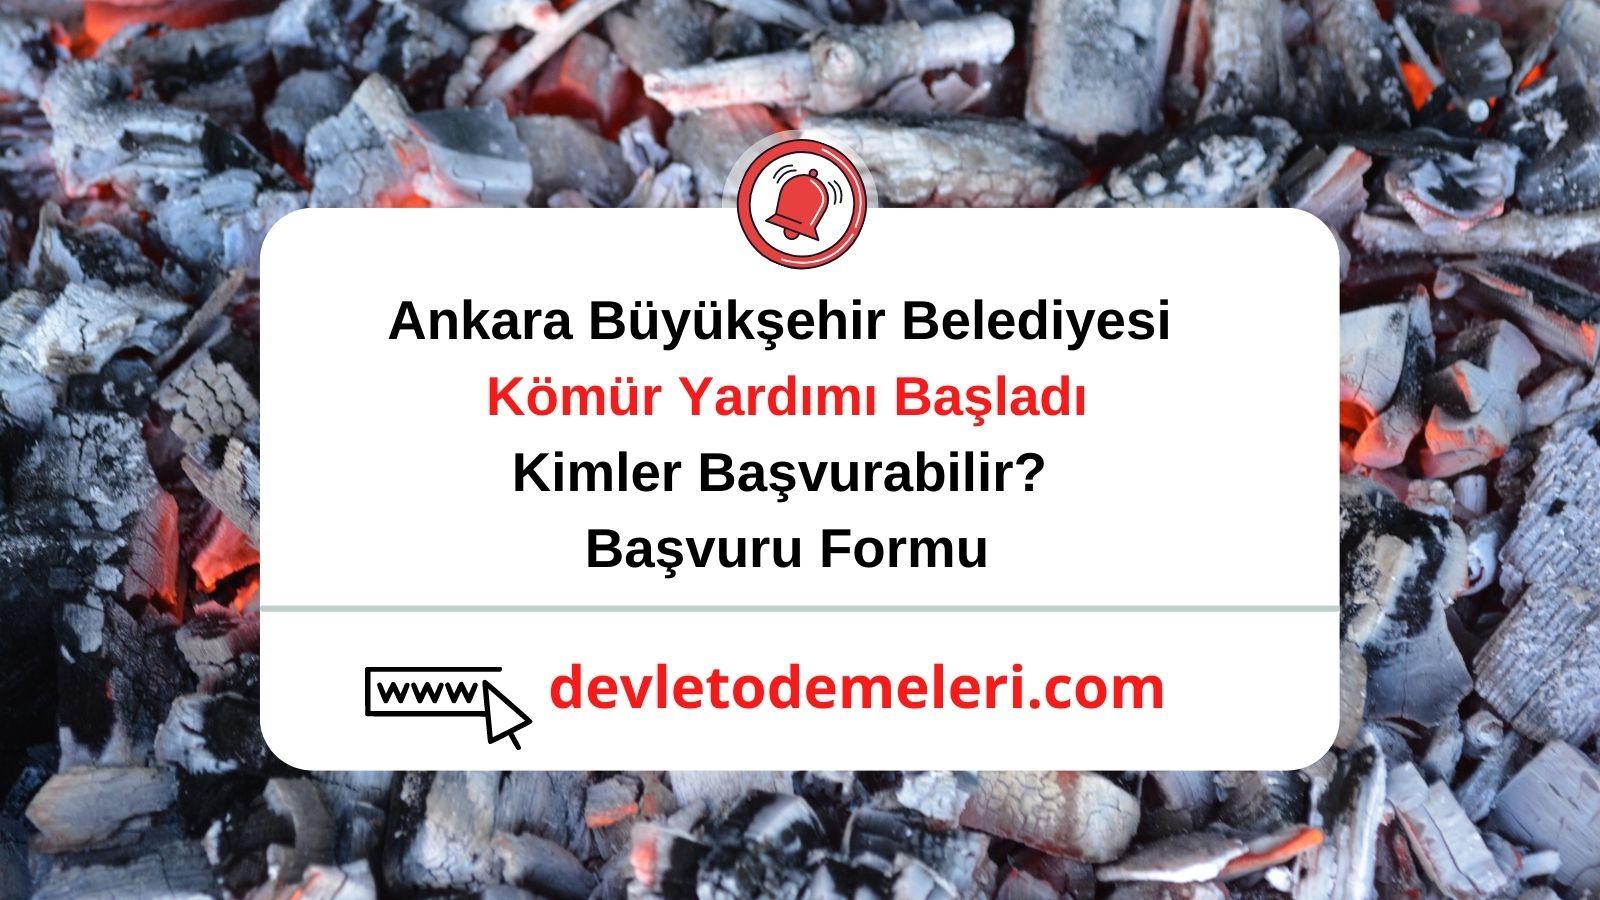 Ankara Büyükşehir Belediyesi Kömür Yardımı Başladı. Kimler Başvurabilir? Başvuru Formu